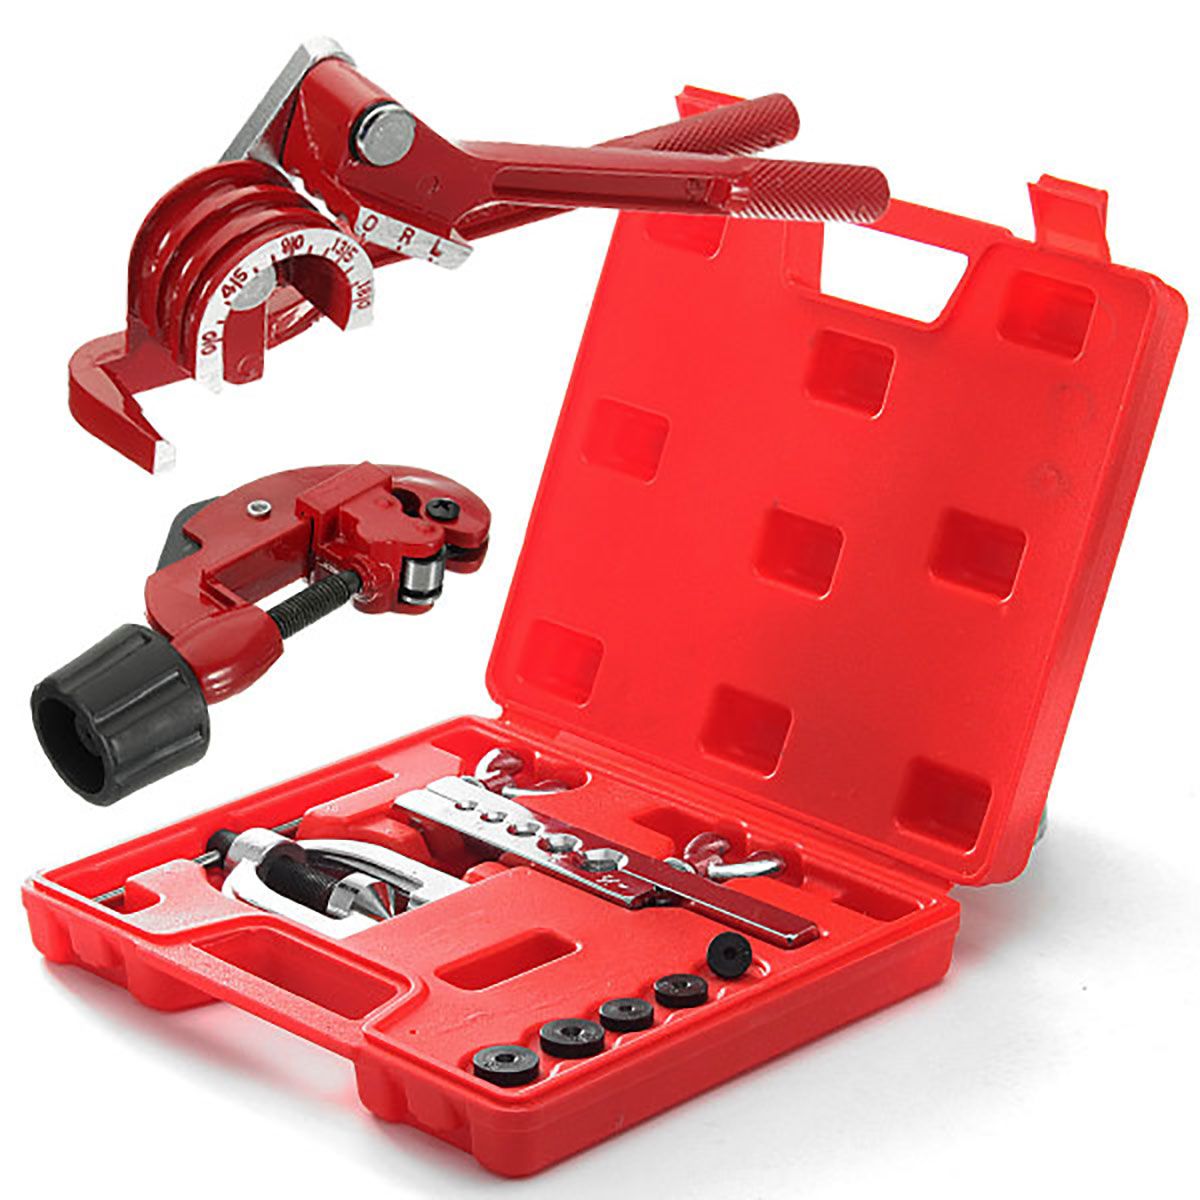 9pcs-Brake-Pipe-Flaring-Kit-Fuel-Repair-Tool-Set-Tube-Bender-Cutter-Storage-Box-1714697